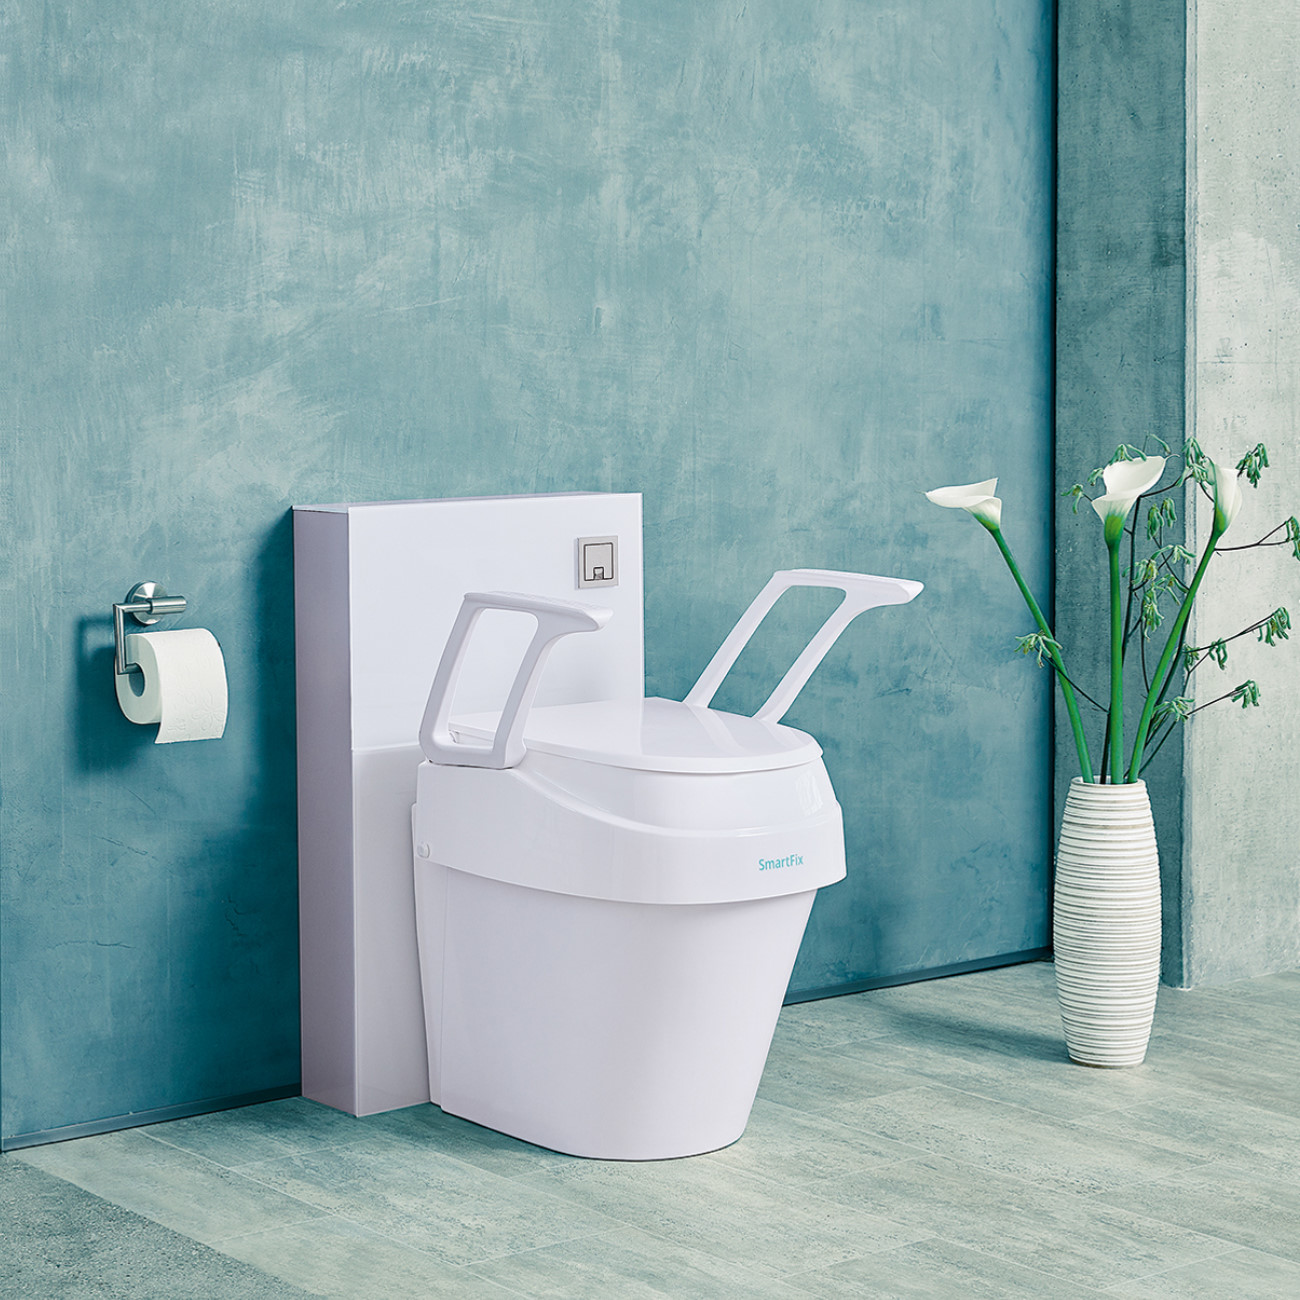 Toilettensitzerhöhung höheneinstellbar mit Armlehnen in neuem Design